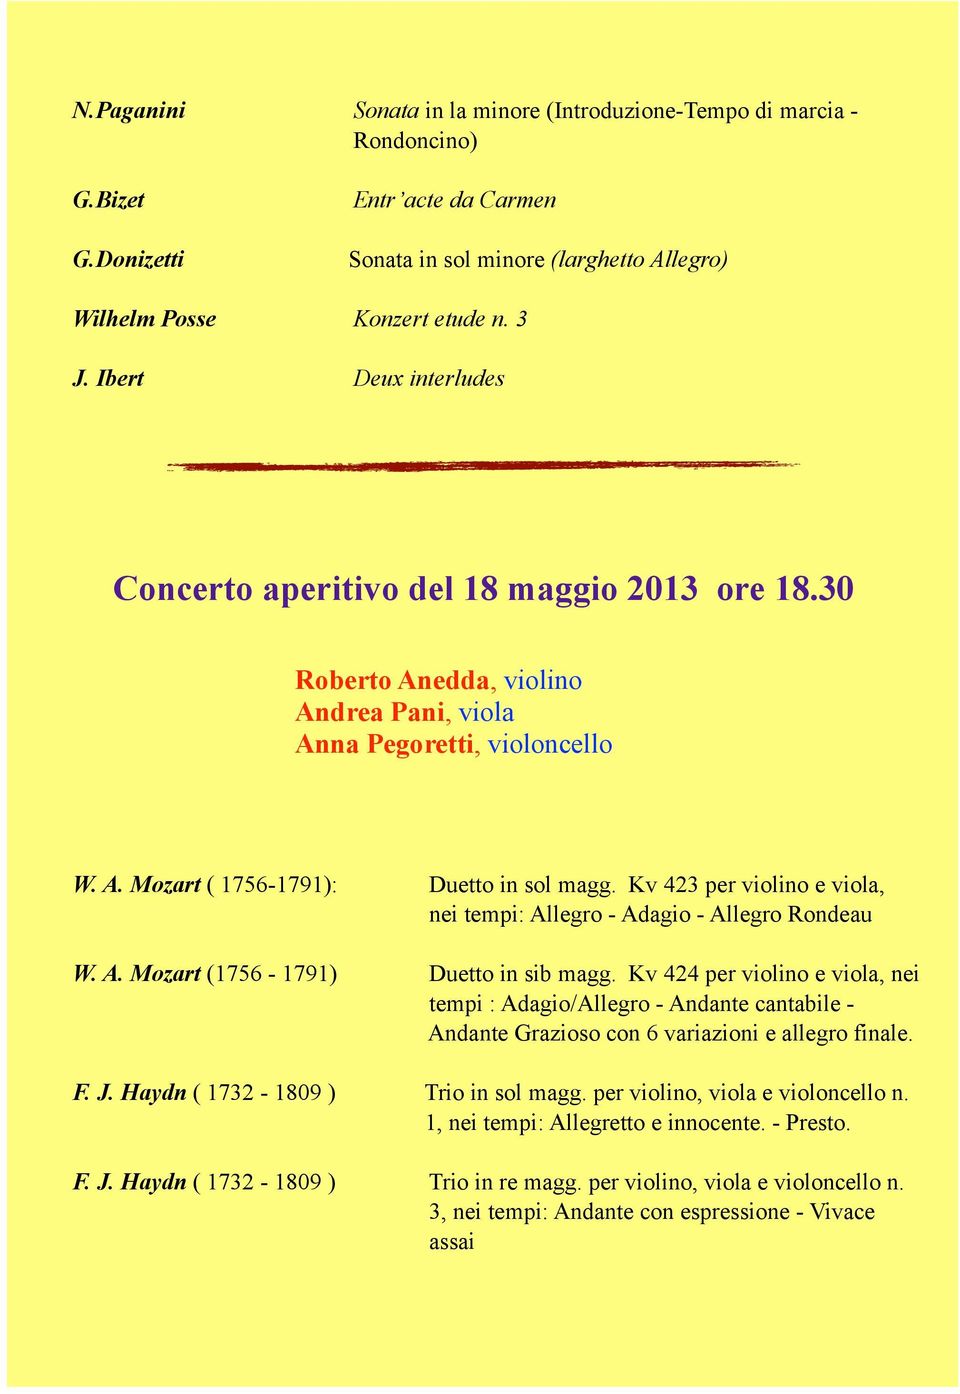 Kv 423 per violino e viola, nei tempi: Allegro - Adagio - Allegro Rondeau W. A. Mozart (1756-1791) Duetto in sib magg.